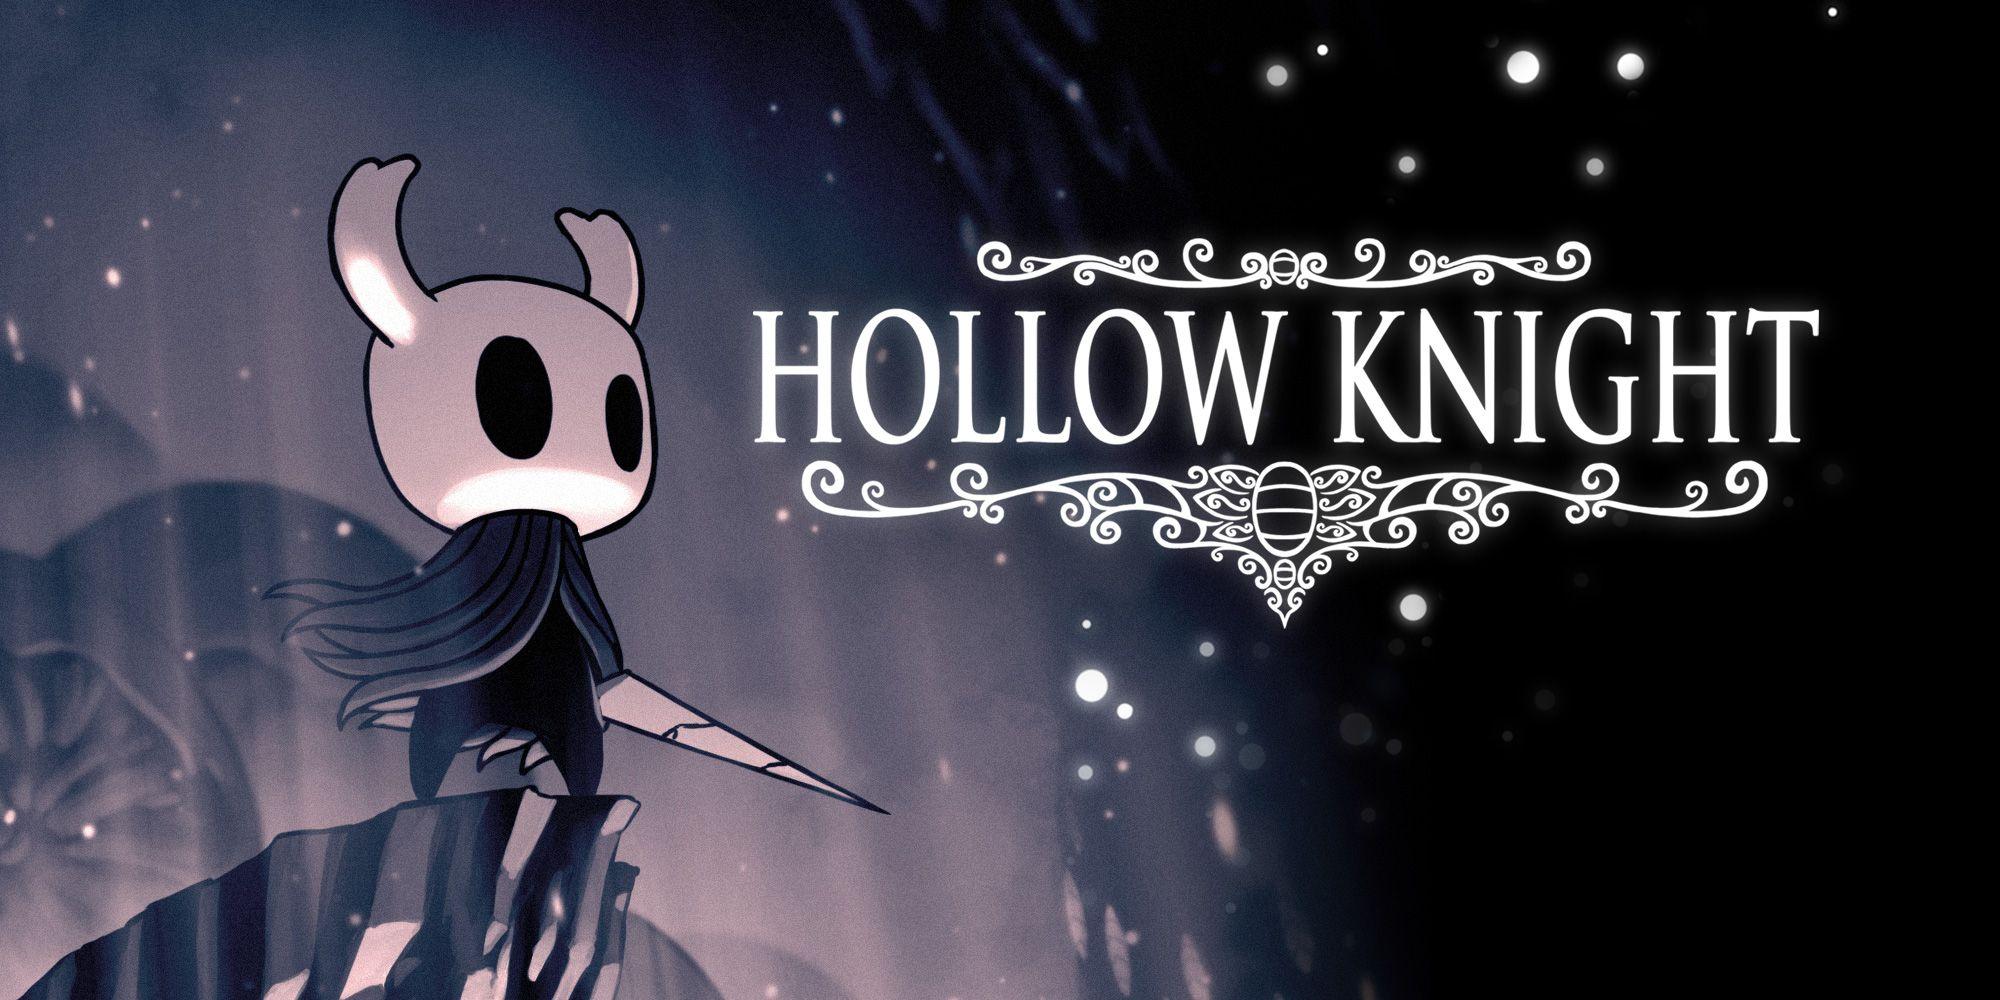 Hollow Knight HD Wallpaper 12 X 1000